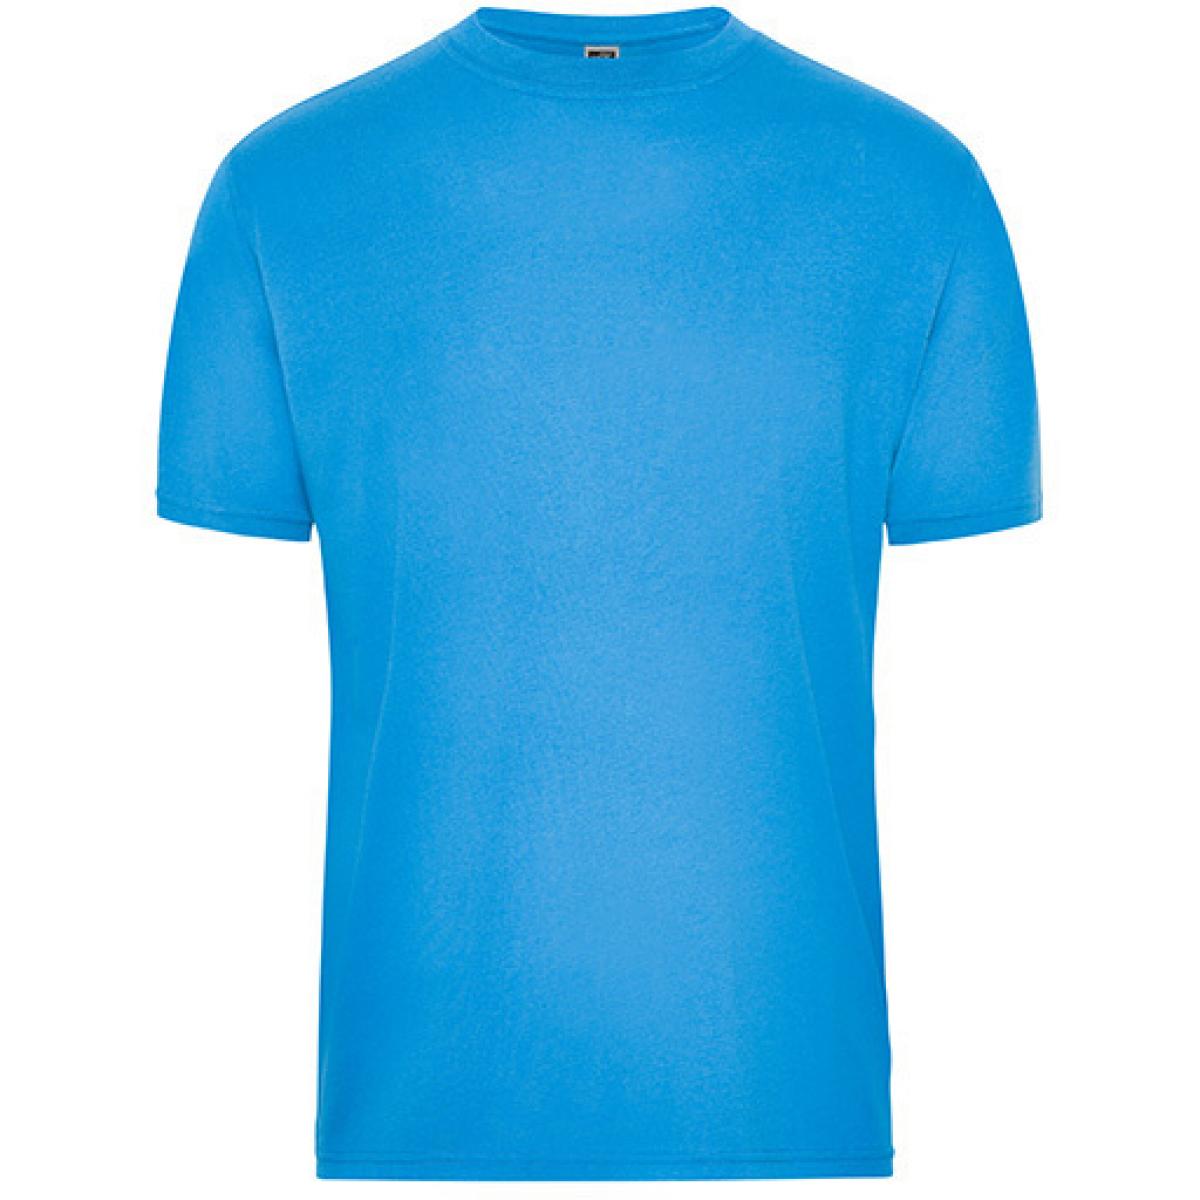 Hersteller: James+Nicholson Herstellernummer: JN1808 Artikelbezeichnung: Men‘s BIO Workwear T-Shirt, Waschbar bis 60 °C Farbe: Aqua